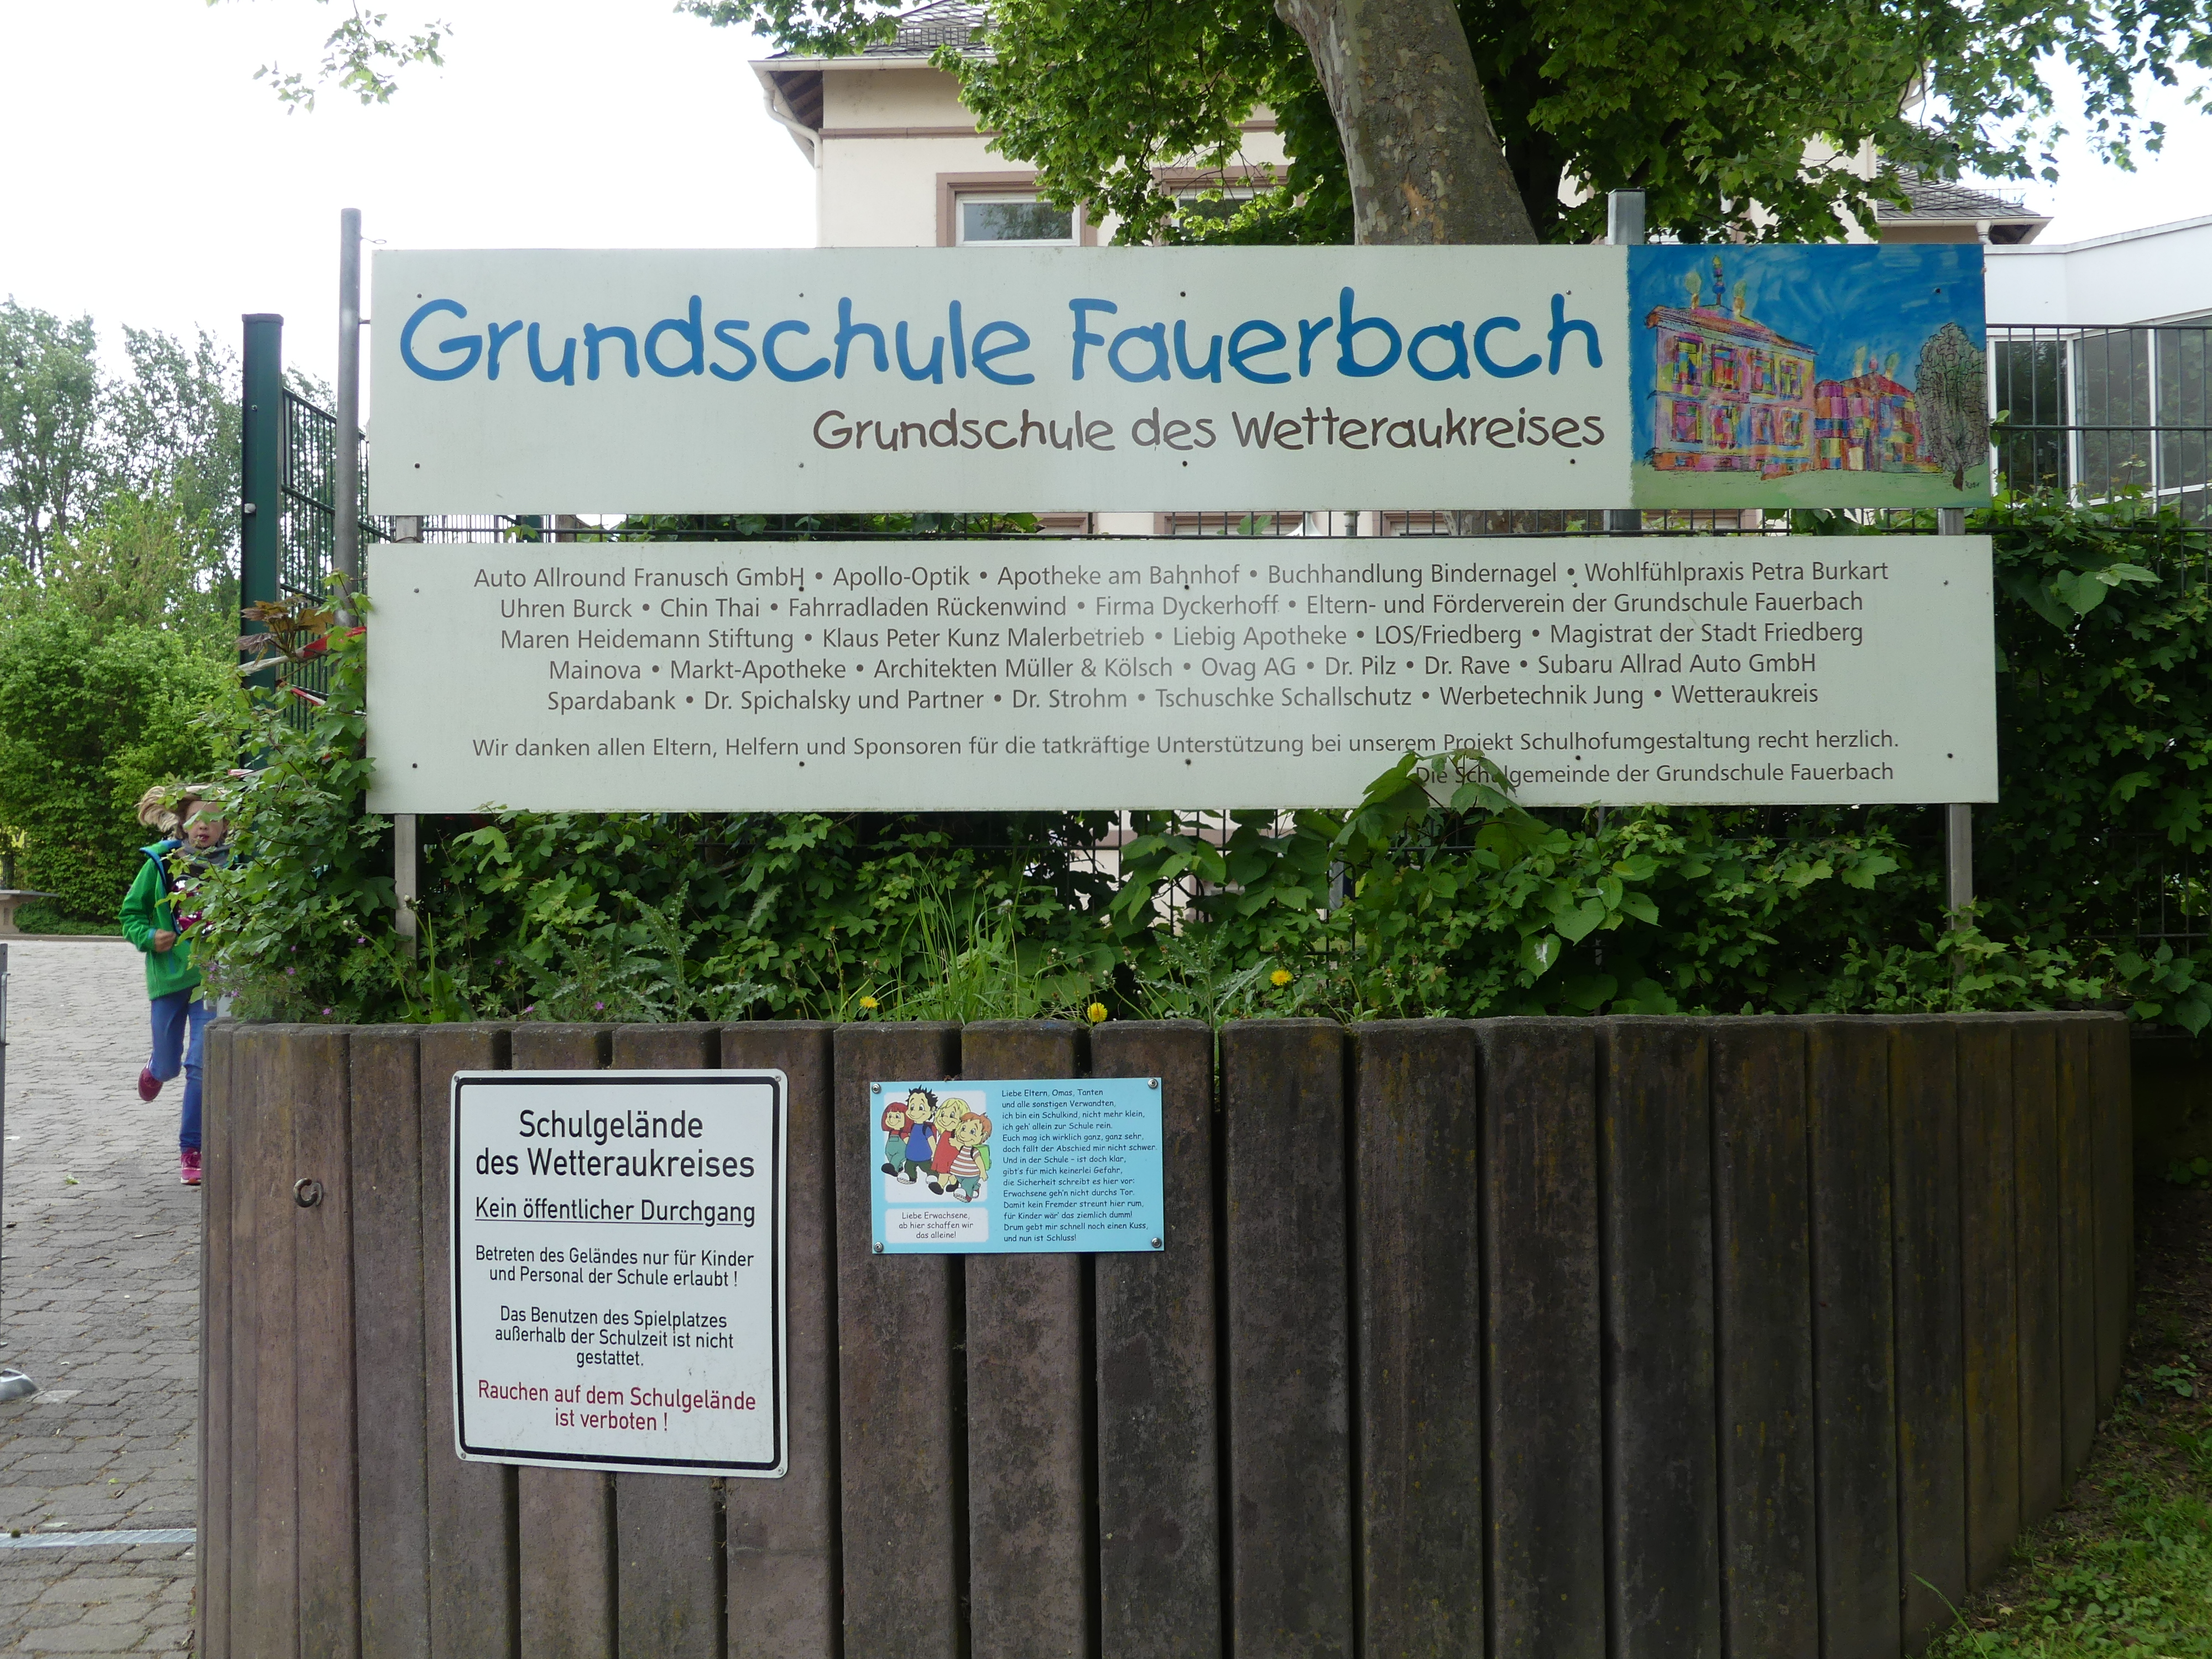 Grundschule Fauerbach in Friedberg